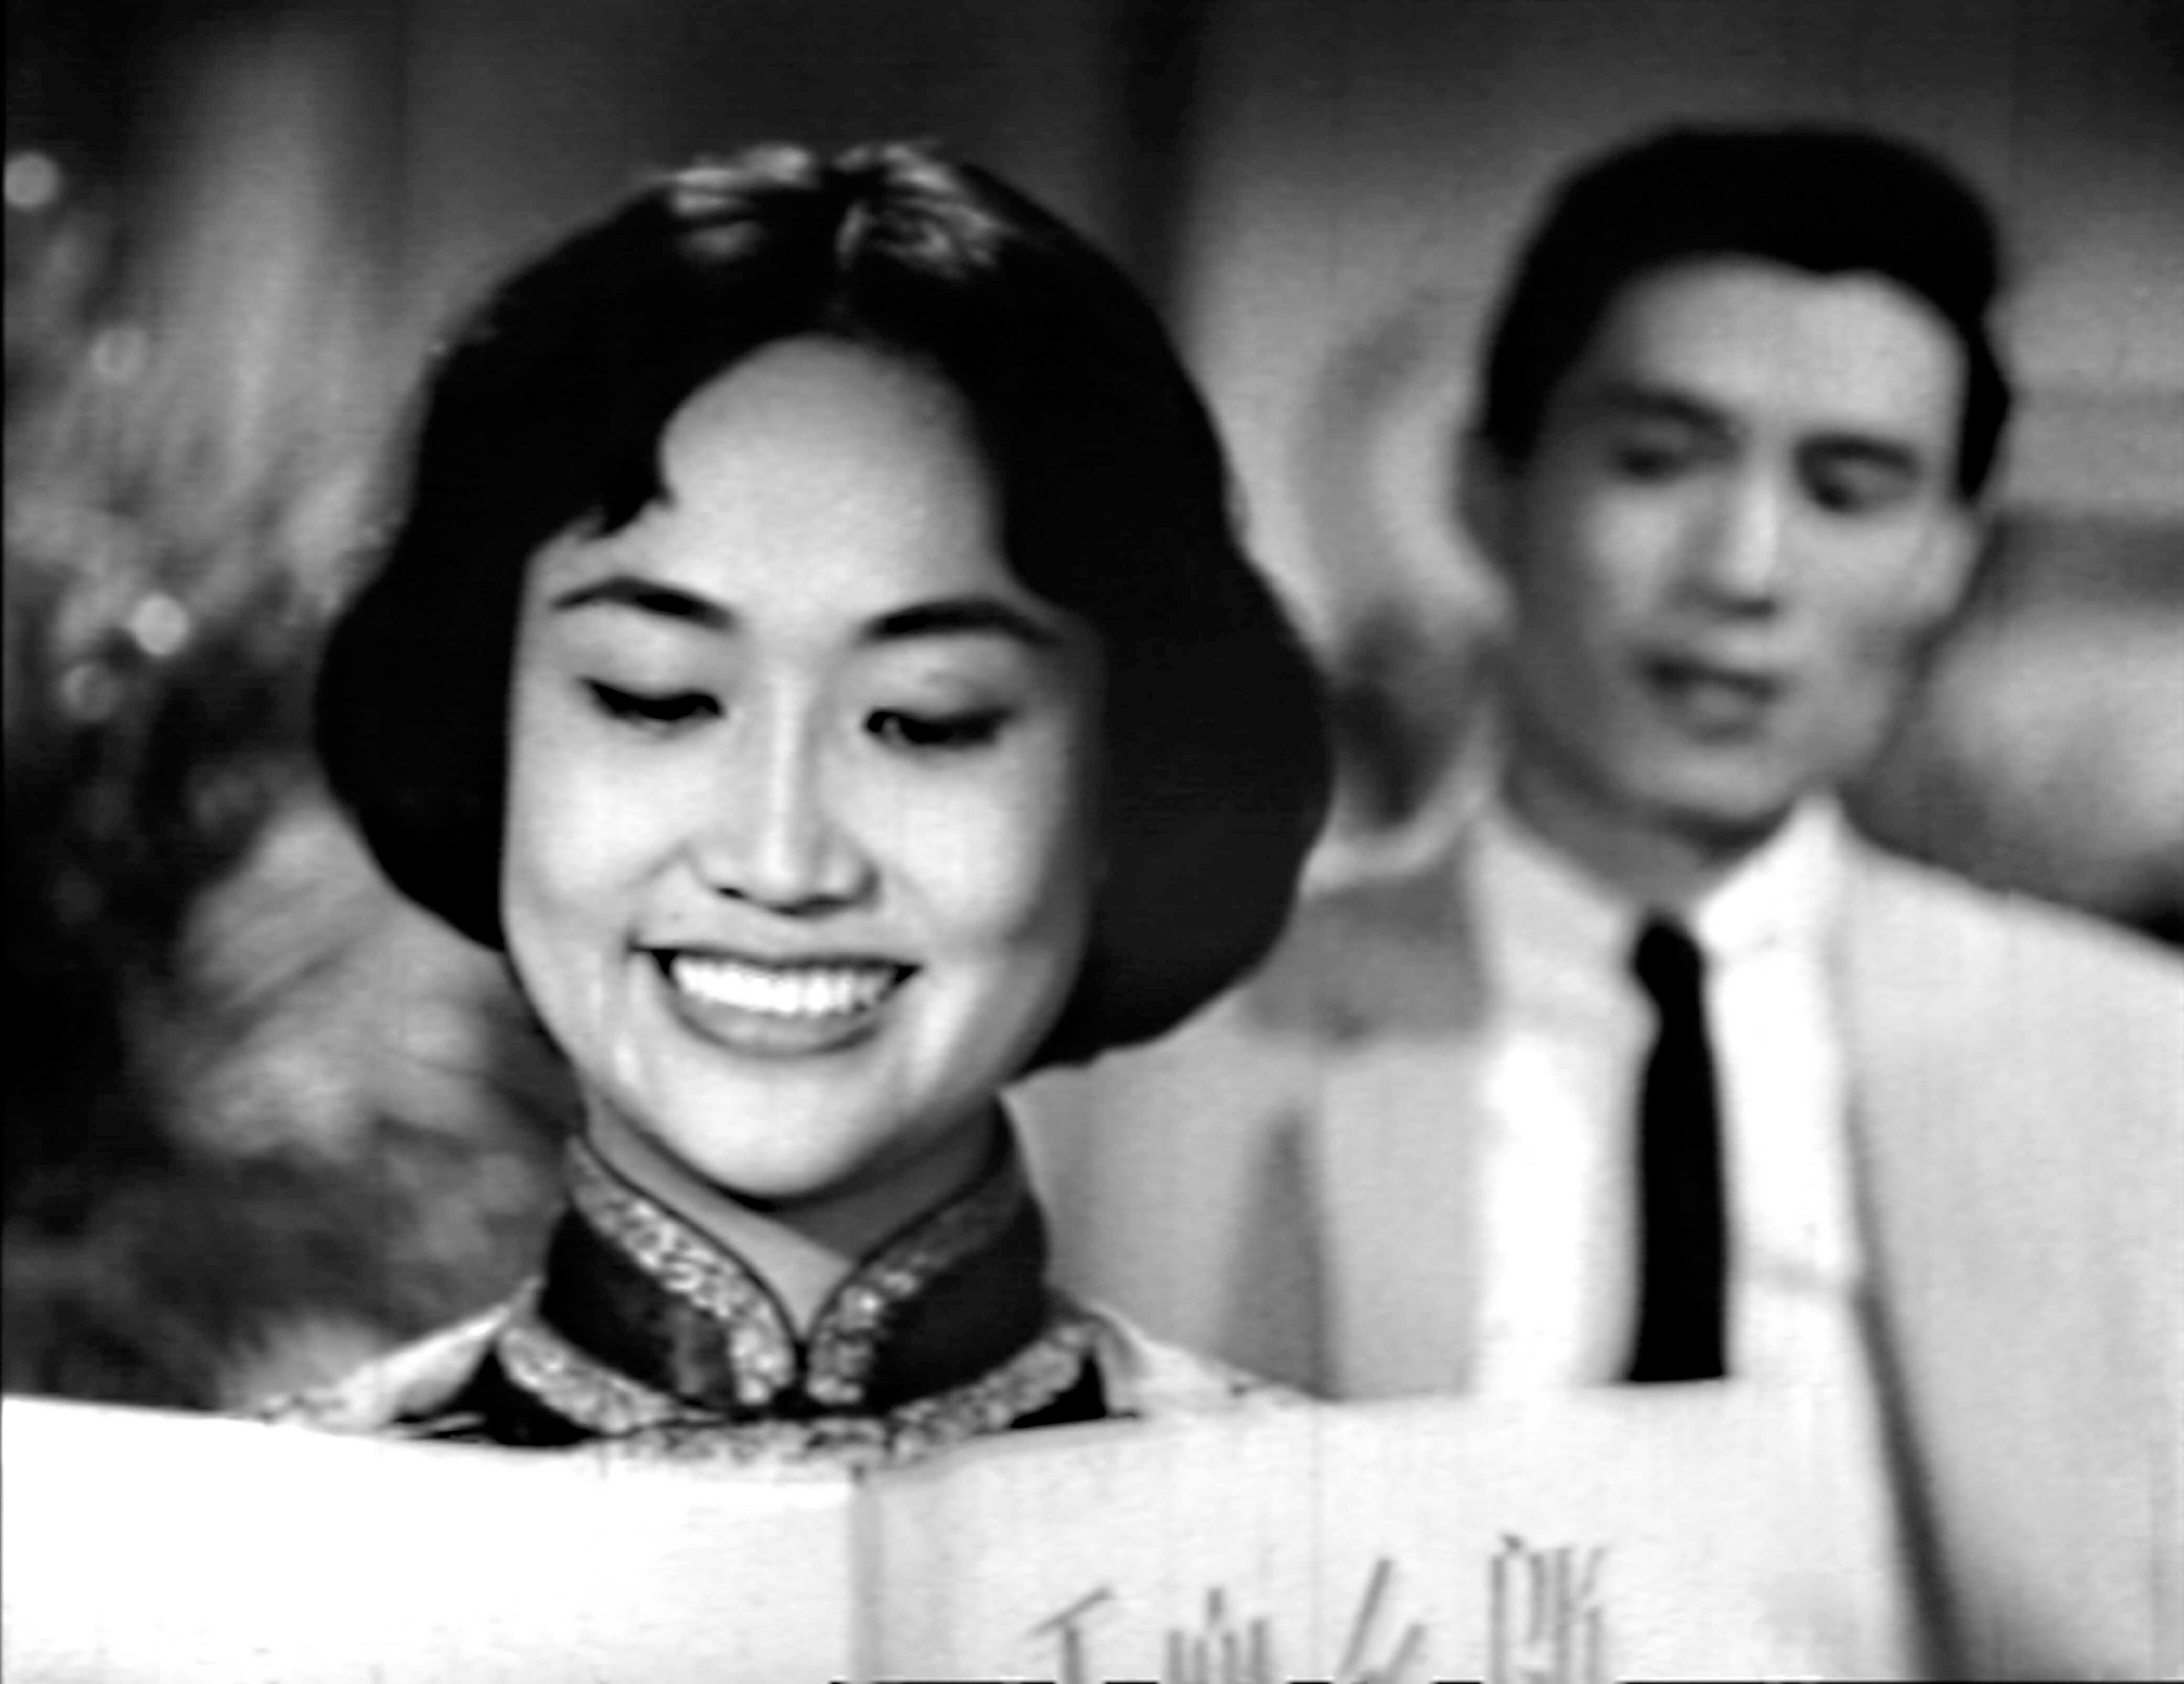 康樂及文化事務署香港電影資料館的「影畫早晨」節目將以「世外桃源——桃源電影企業公司」為題，於明年一月至四月選映十五部由桃源電影企業公司（桃源影業）出品的經典電影，讓觀眾重溫桃源影業於五十至六十年代出品的銀幕佳作。圖示《千面女郎》（1959）劇照。